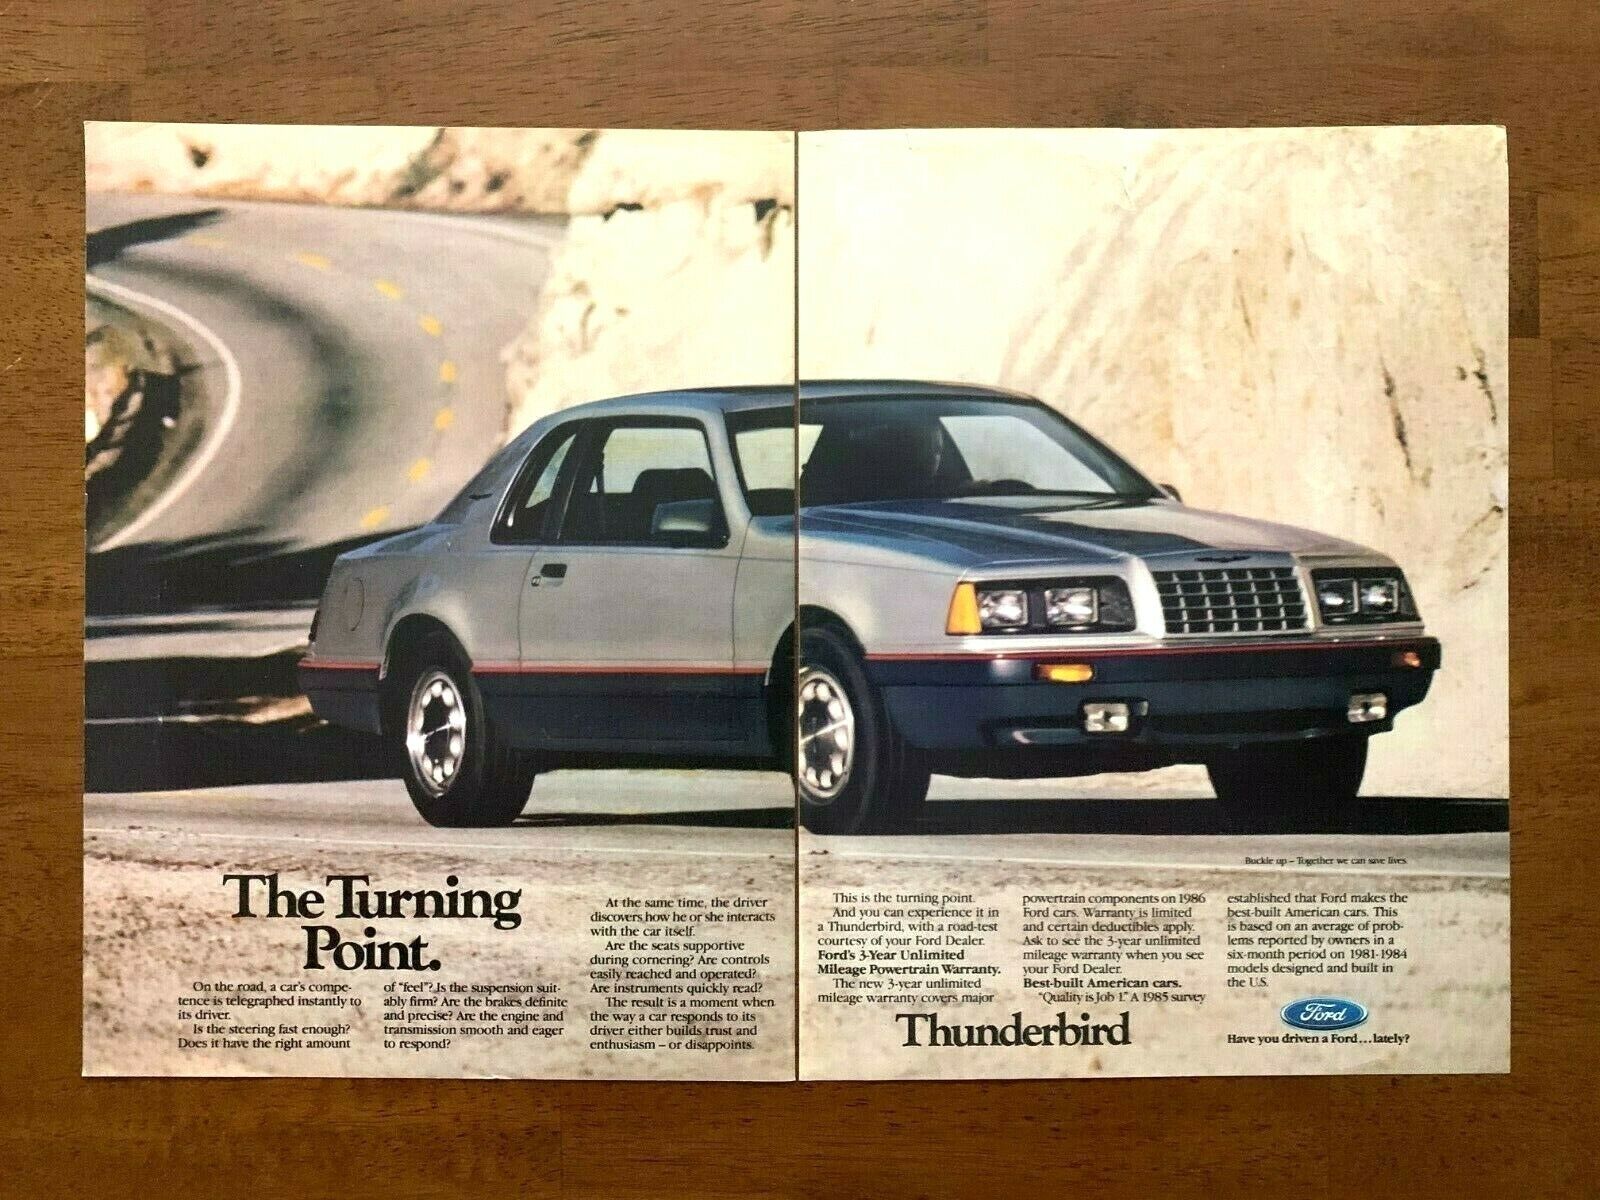 1986 Ford Thunderbird Vintage Print Ad/Poster 80s Car Man Cave Bar Art Décor 